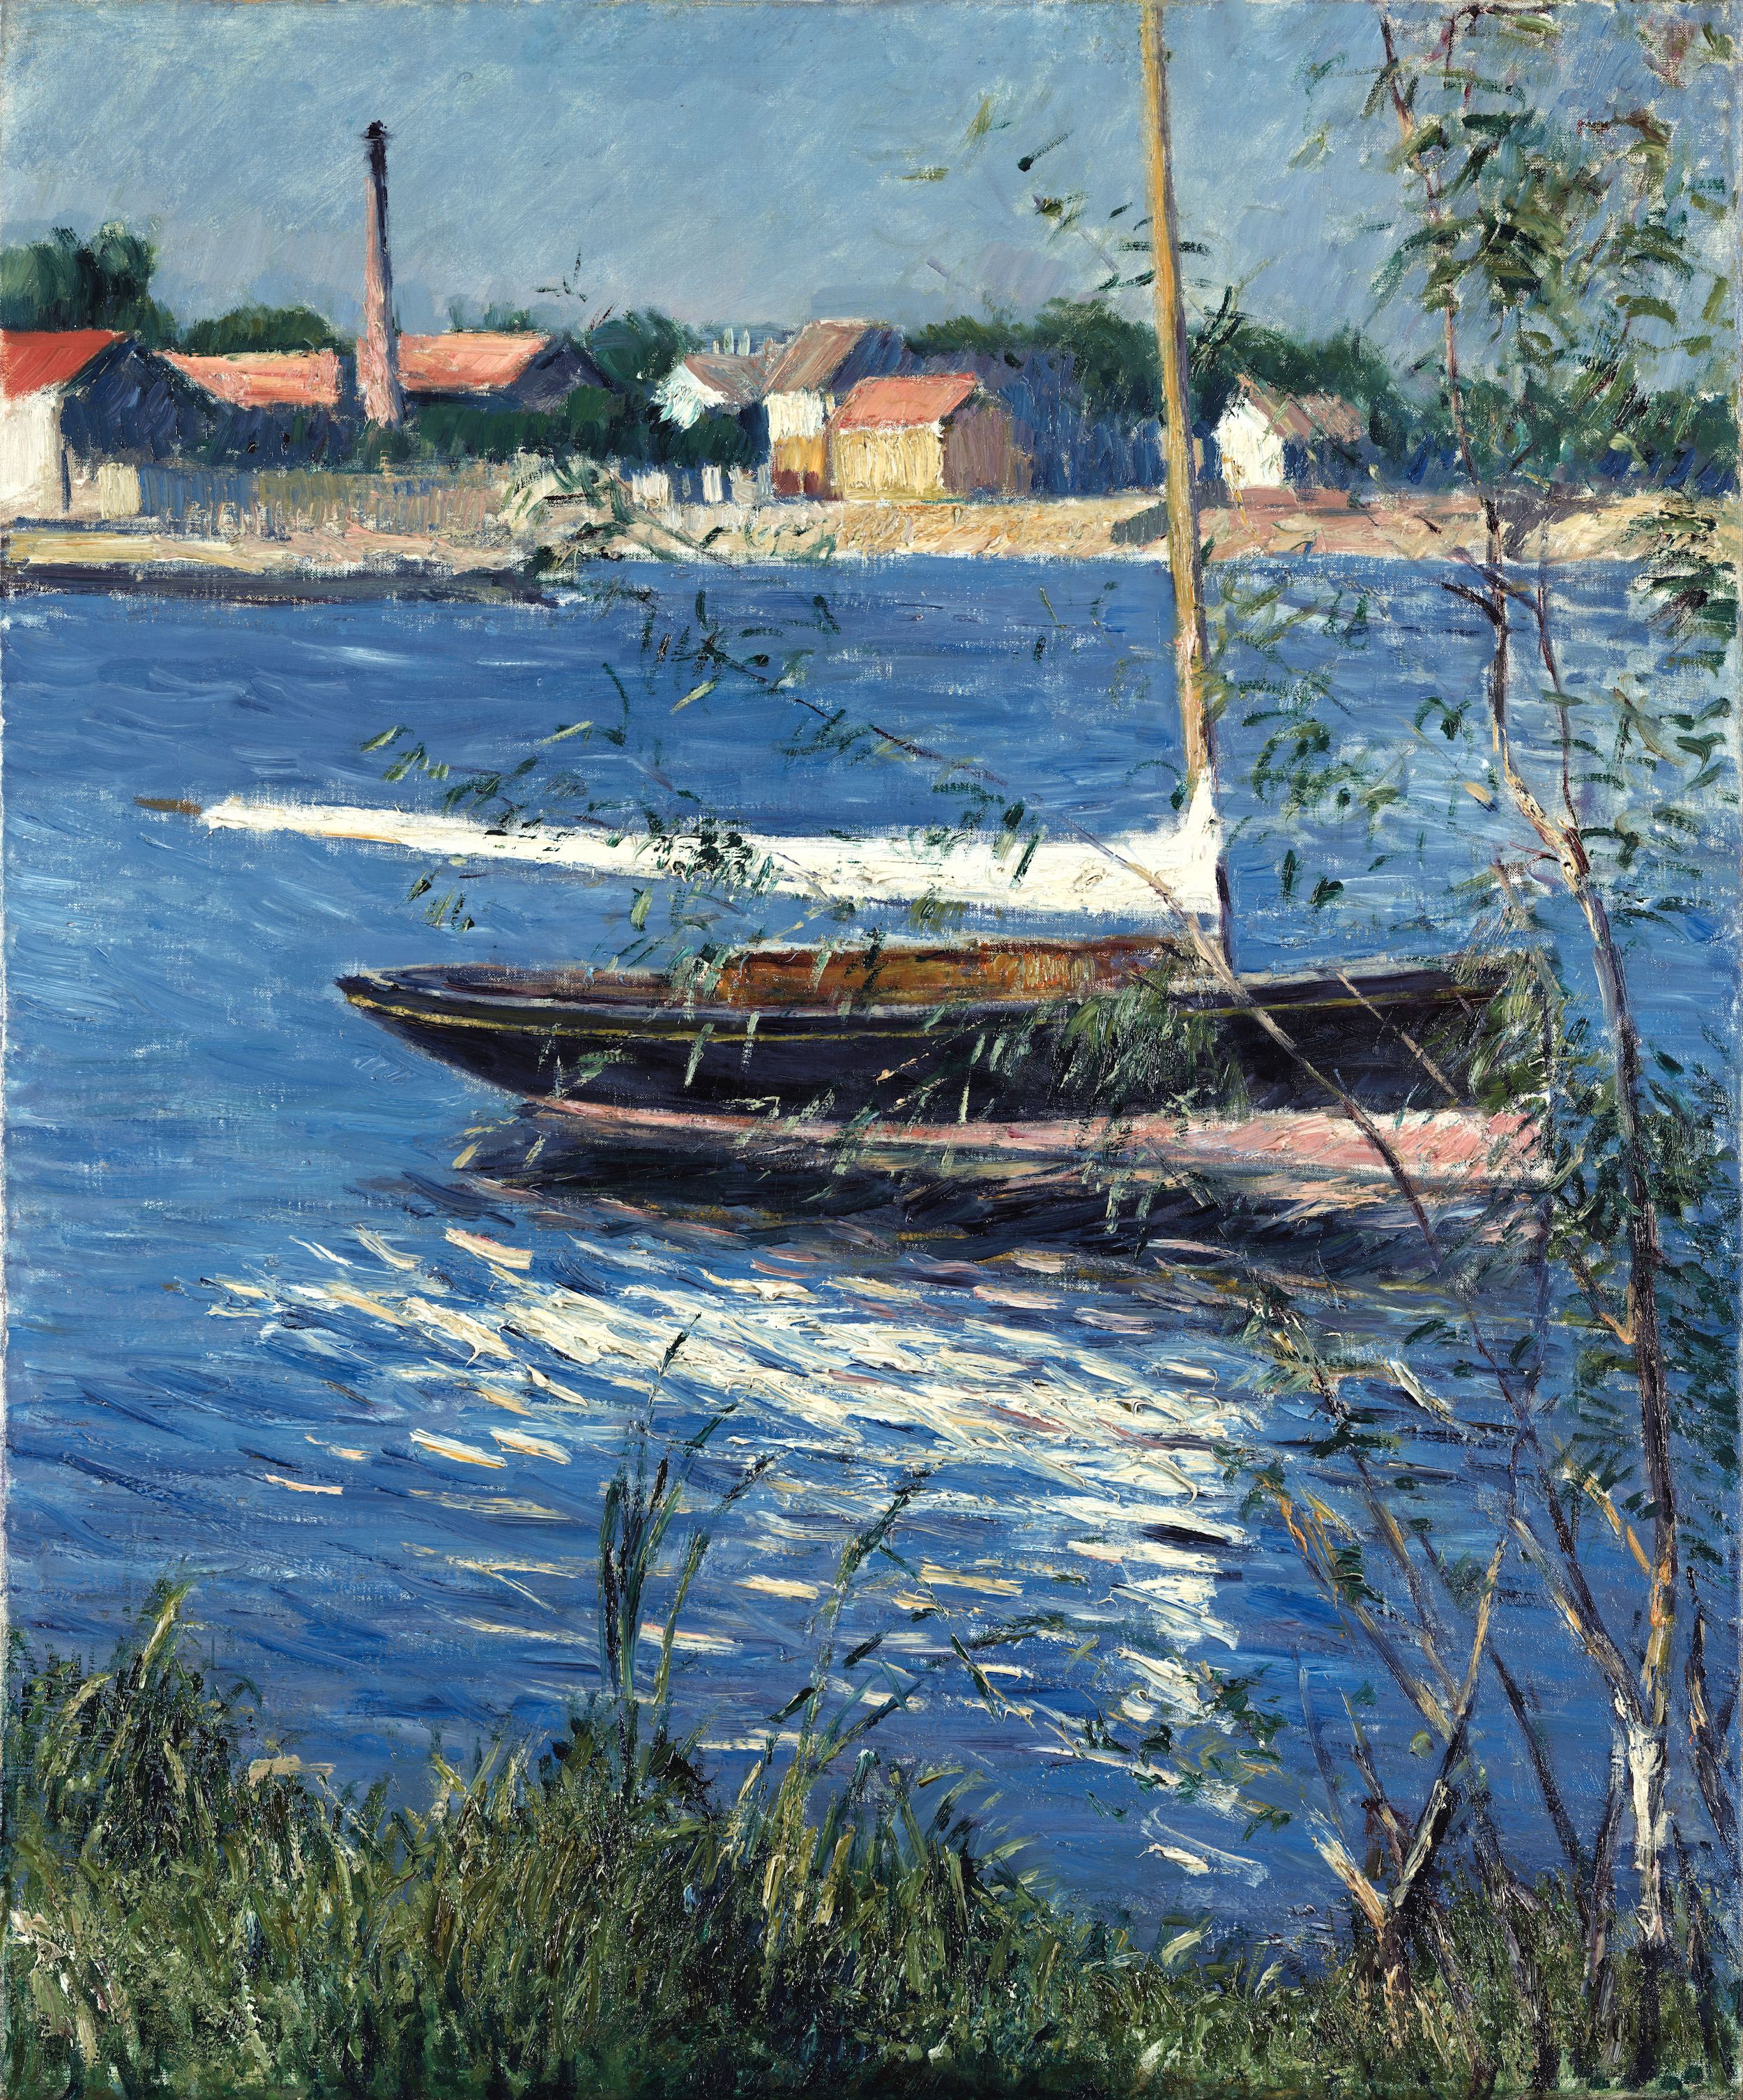 塞纳河上的船 by 古斯塔夫 卡勒波特 - c. 1884 